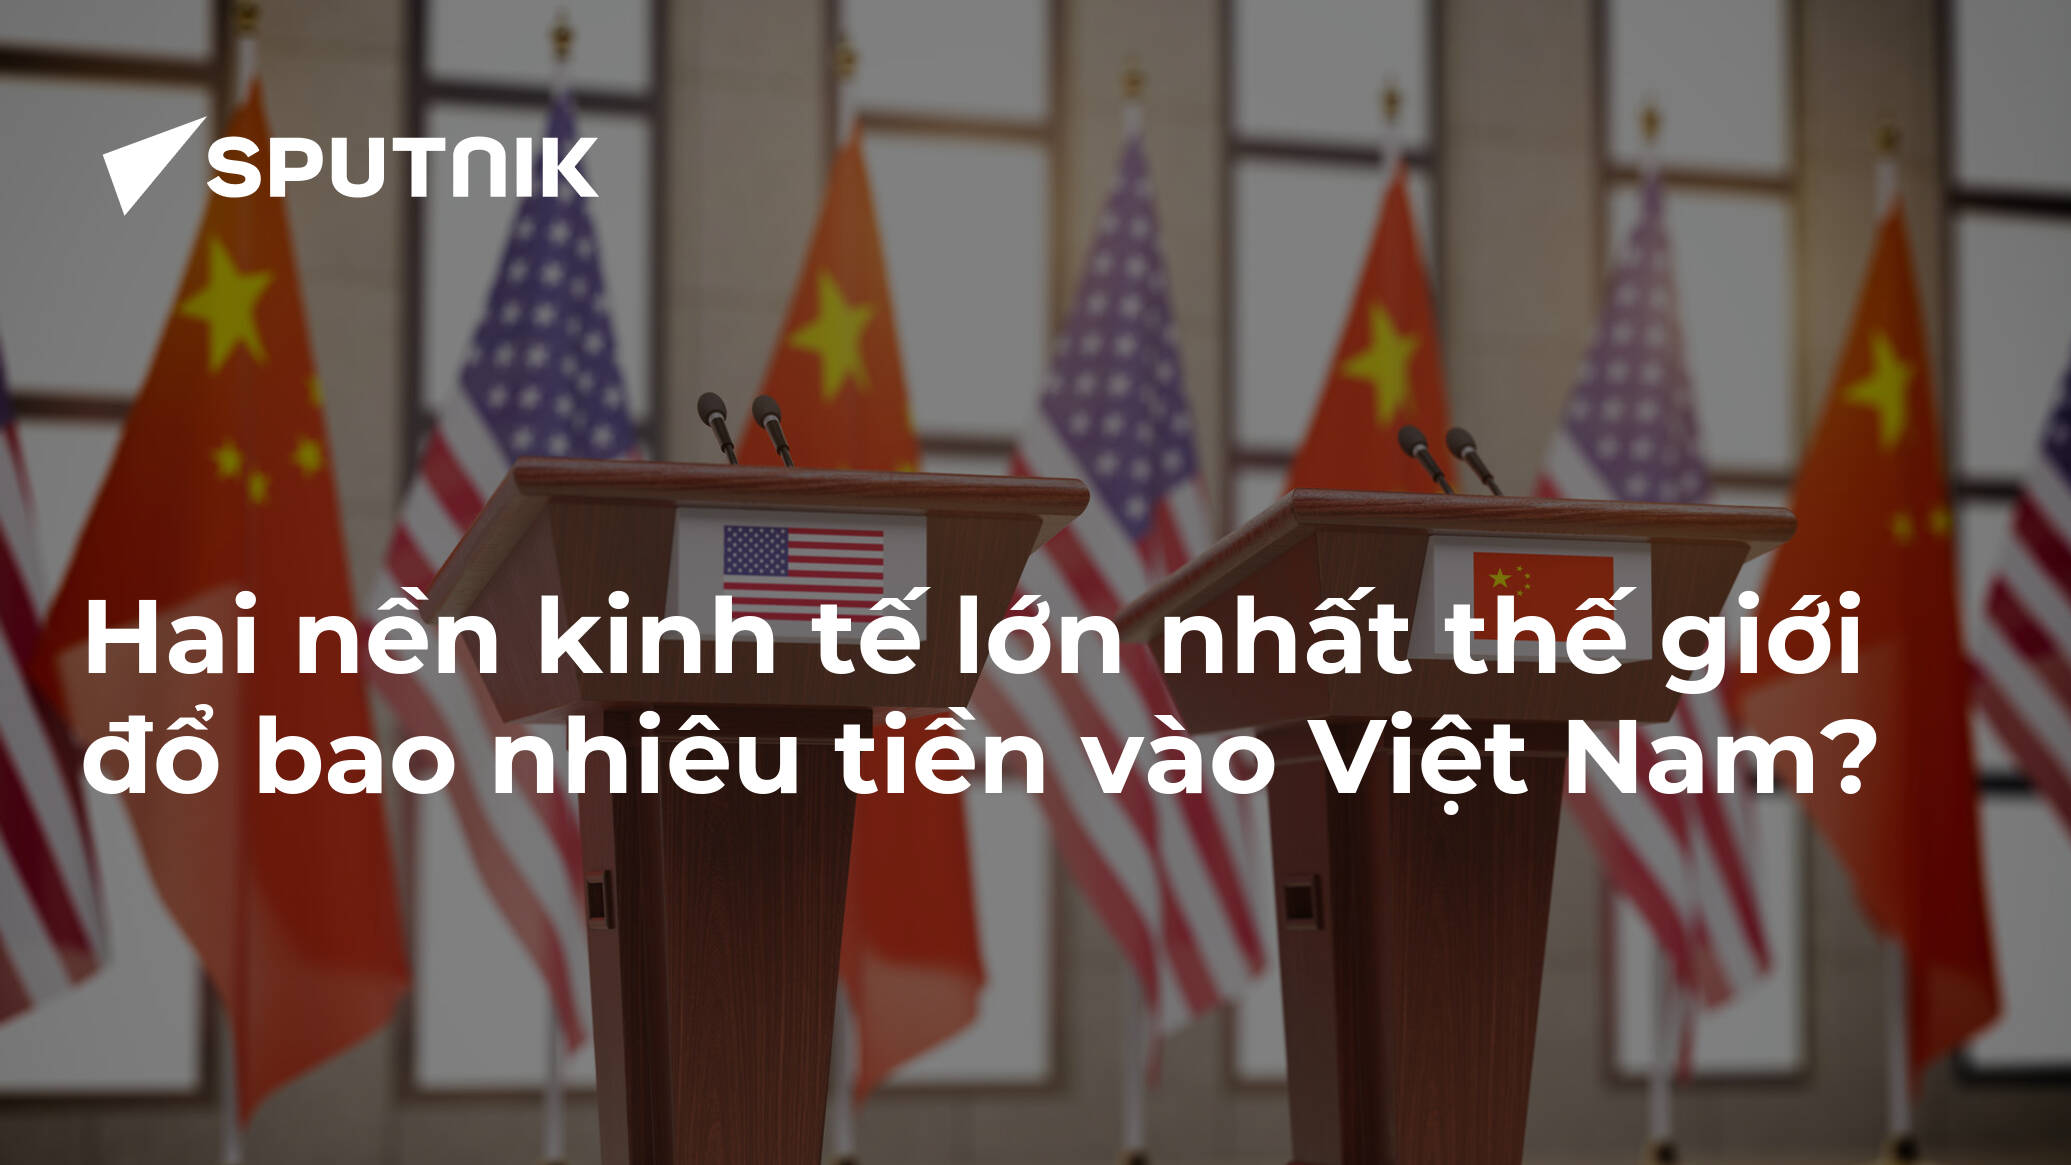 Có tin vui cho những ai đang quan tâm đến kinh tế Việt Nam! Đầu tư từ những nền kinh tế lớn nhất thế giới đang đổ về Việt Nam không chỉ tạo ra nhiều cơ hội mới mà còn giúp giảm chi phí của lá cờ Việt Nam. Xem ảnh để biết thêm chi tiết về sự đầu tư tại Việt Nam.